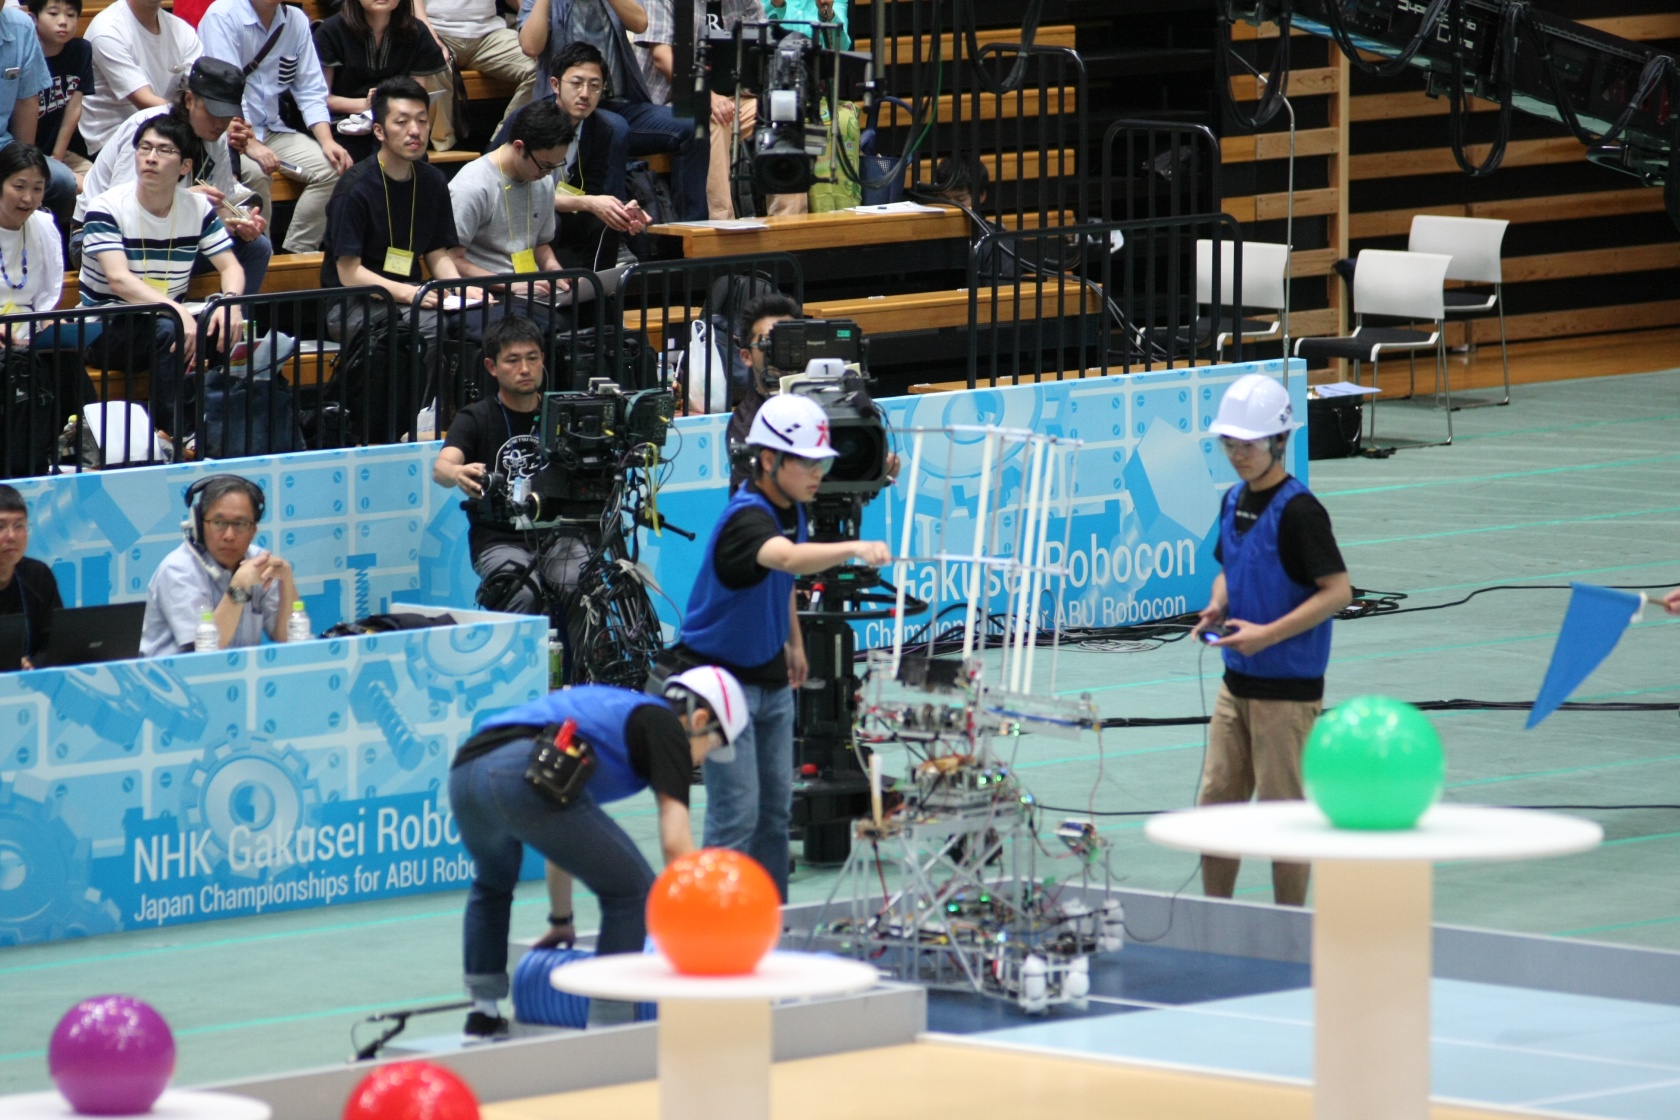 工学院大学ロボットプロジェクトがNHK学生ロボコン2017で大健闘